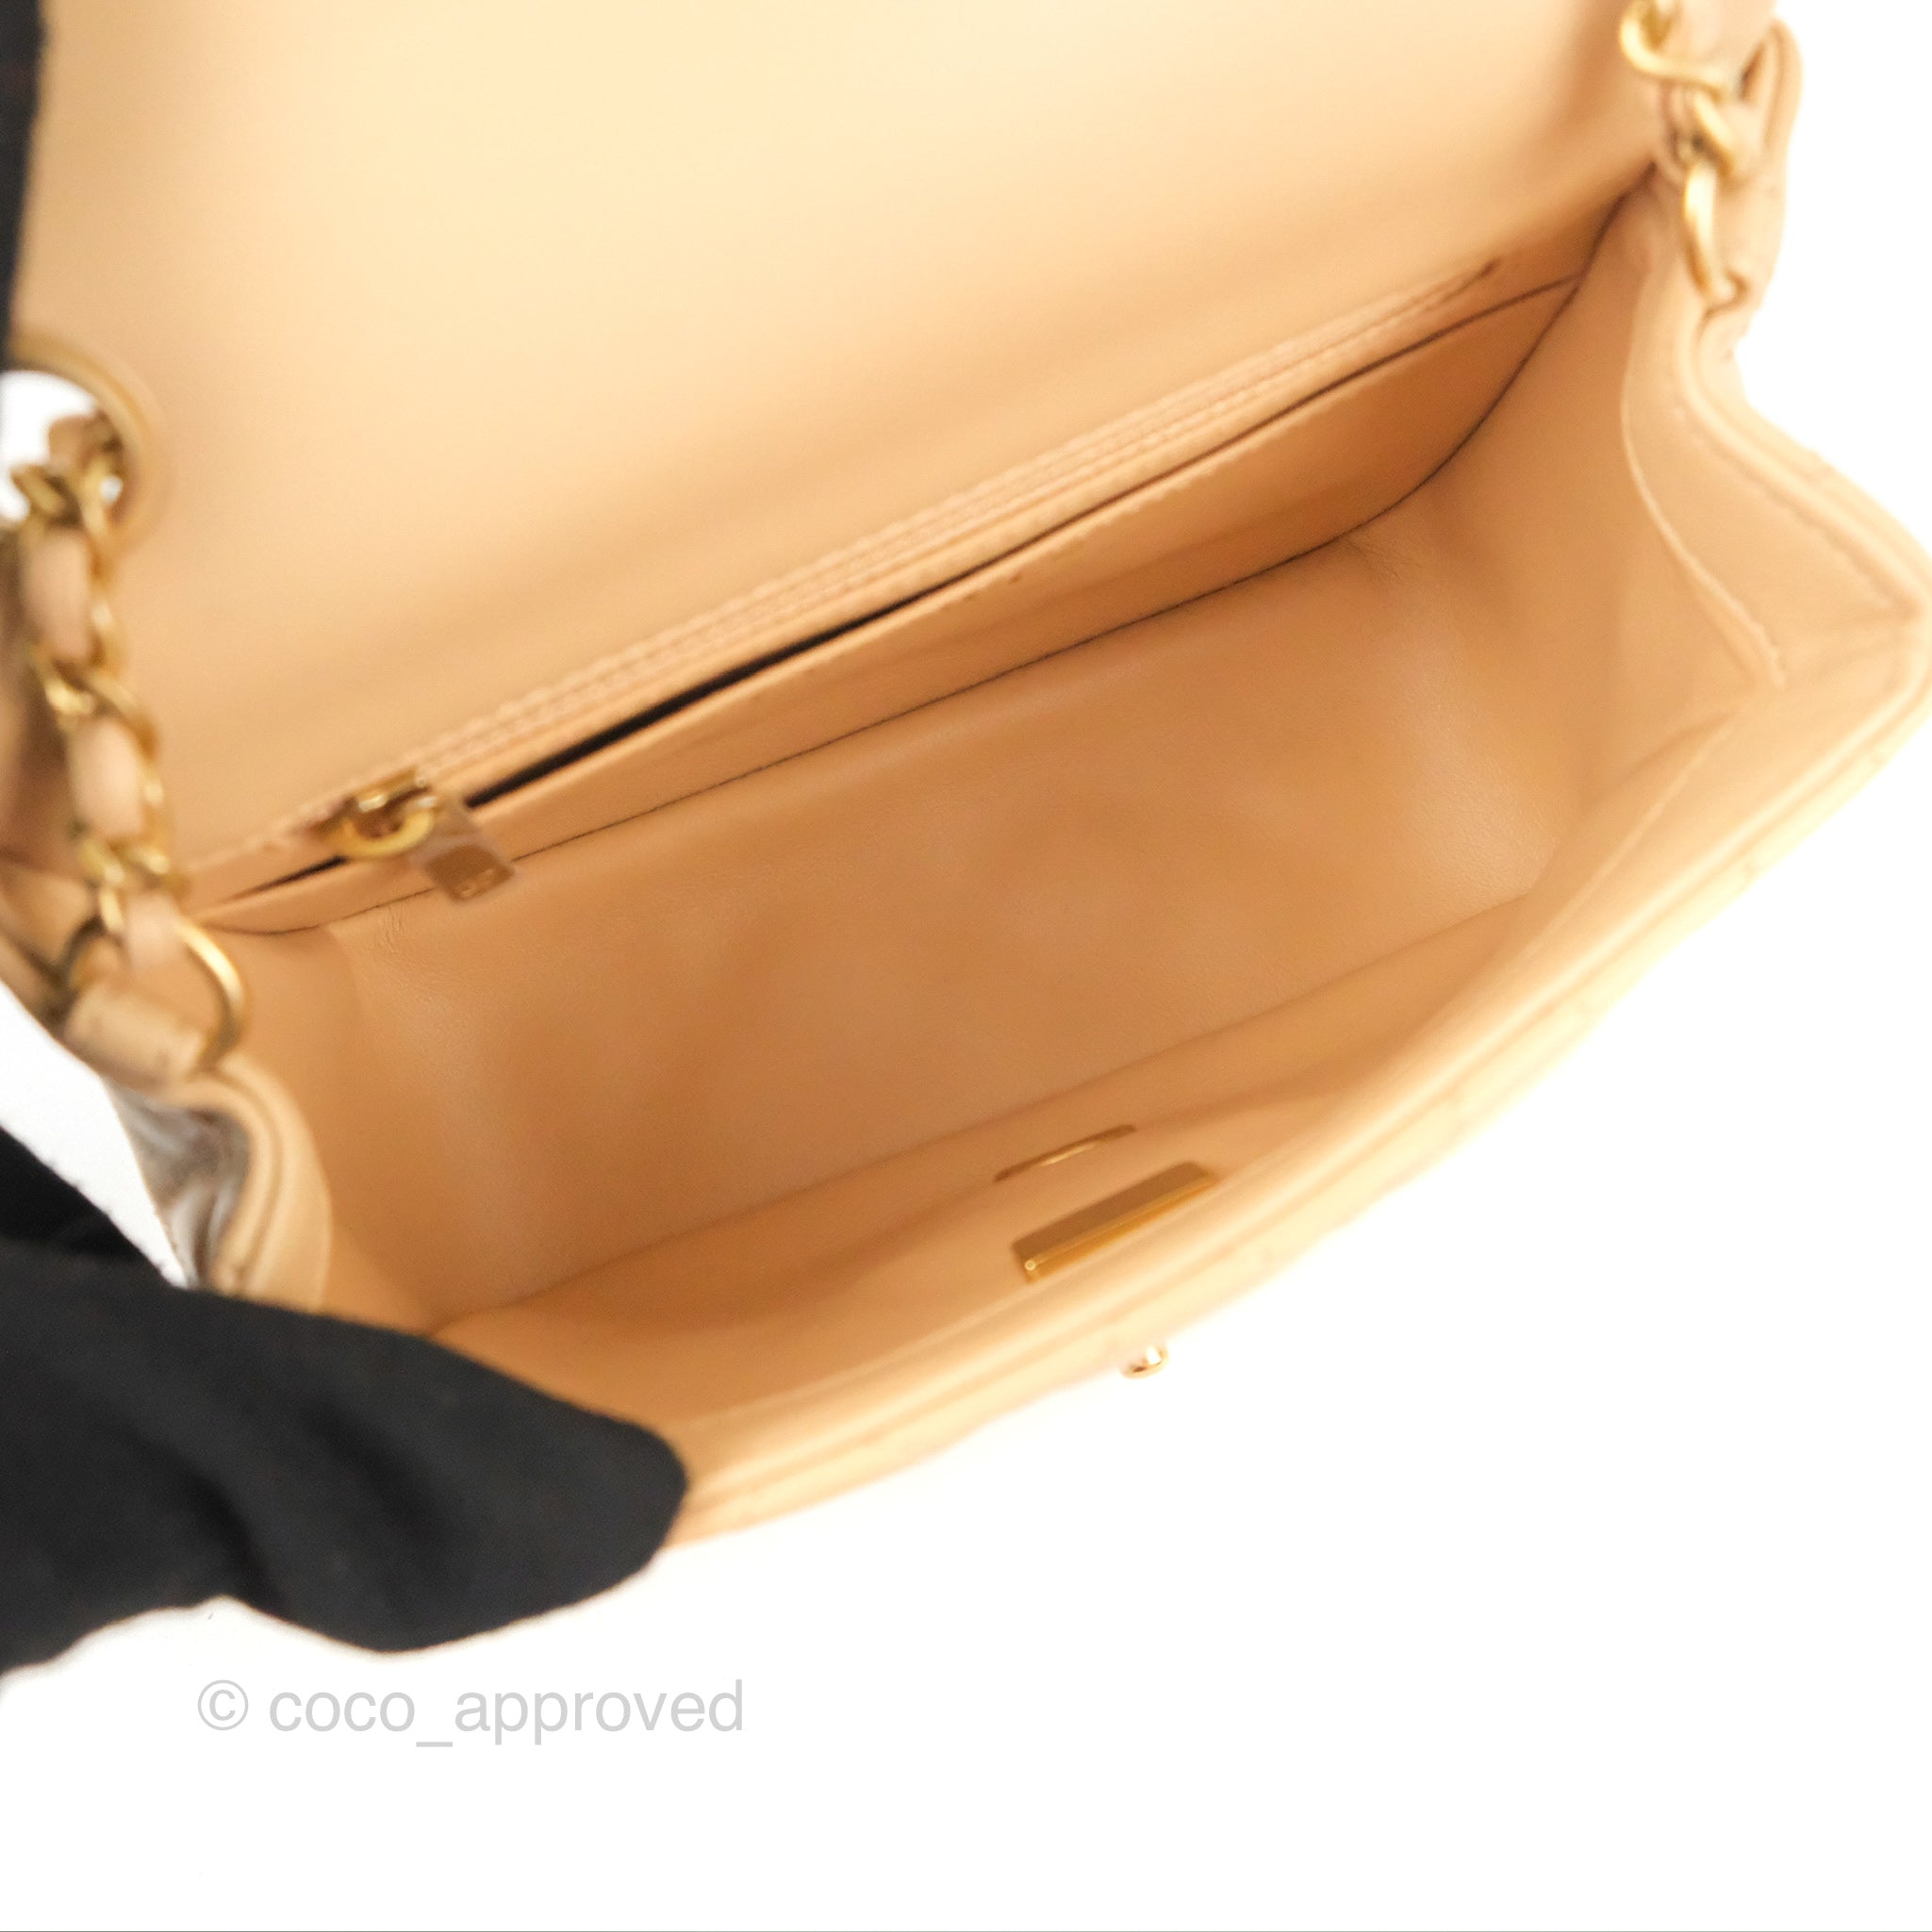 Sold at Auction: Louis Vuitton - Bag Charm Chain - Boyfriend ID V